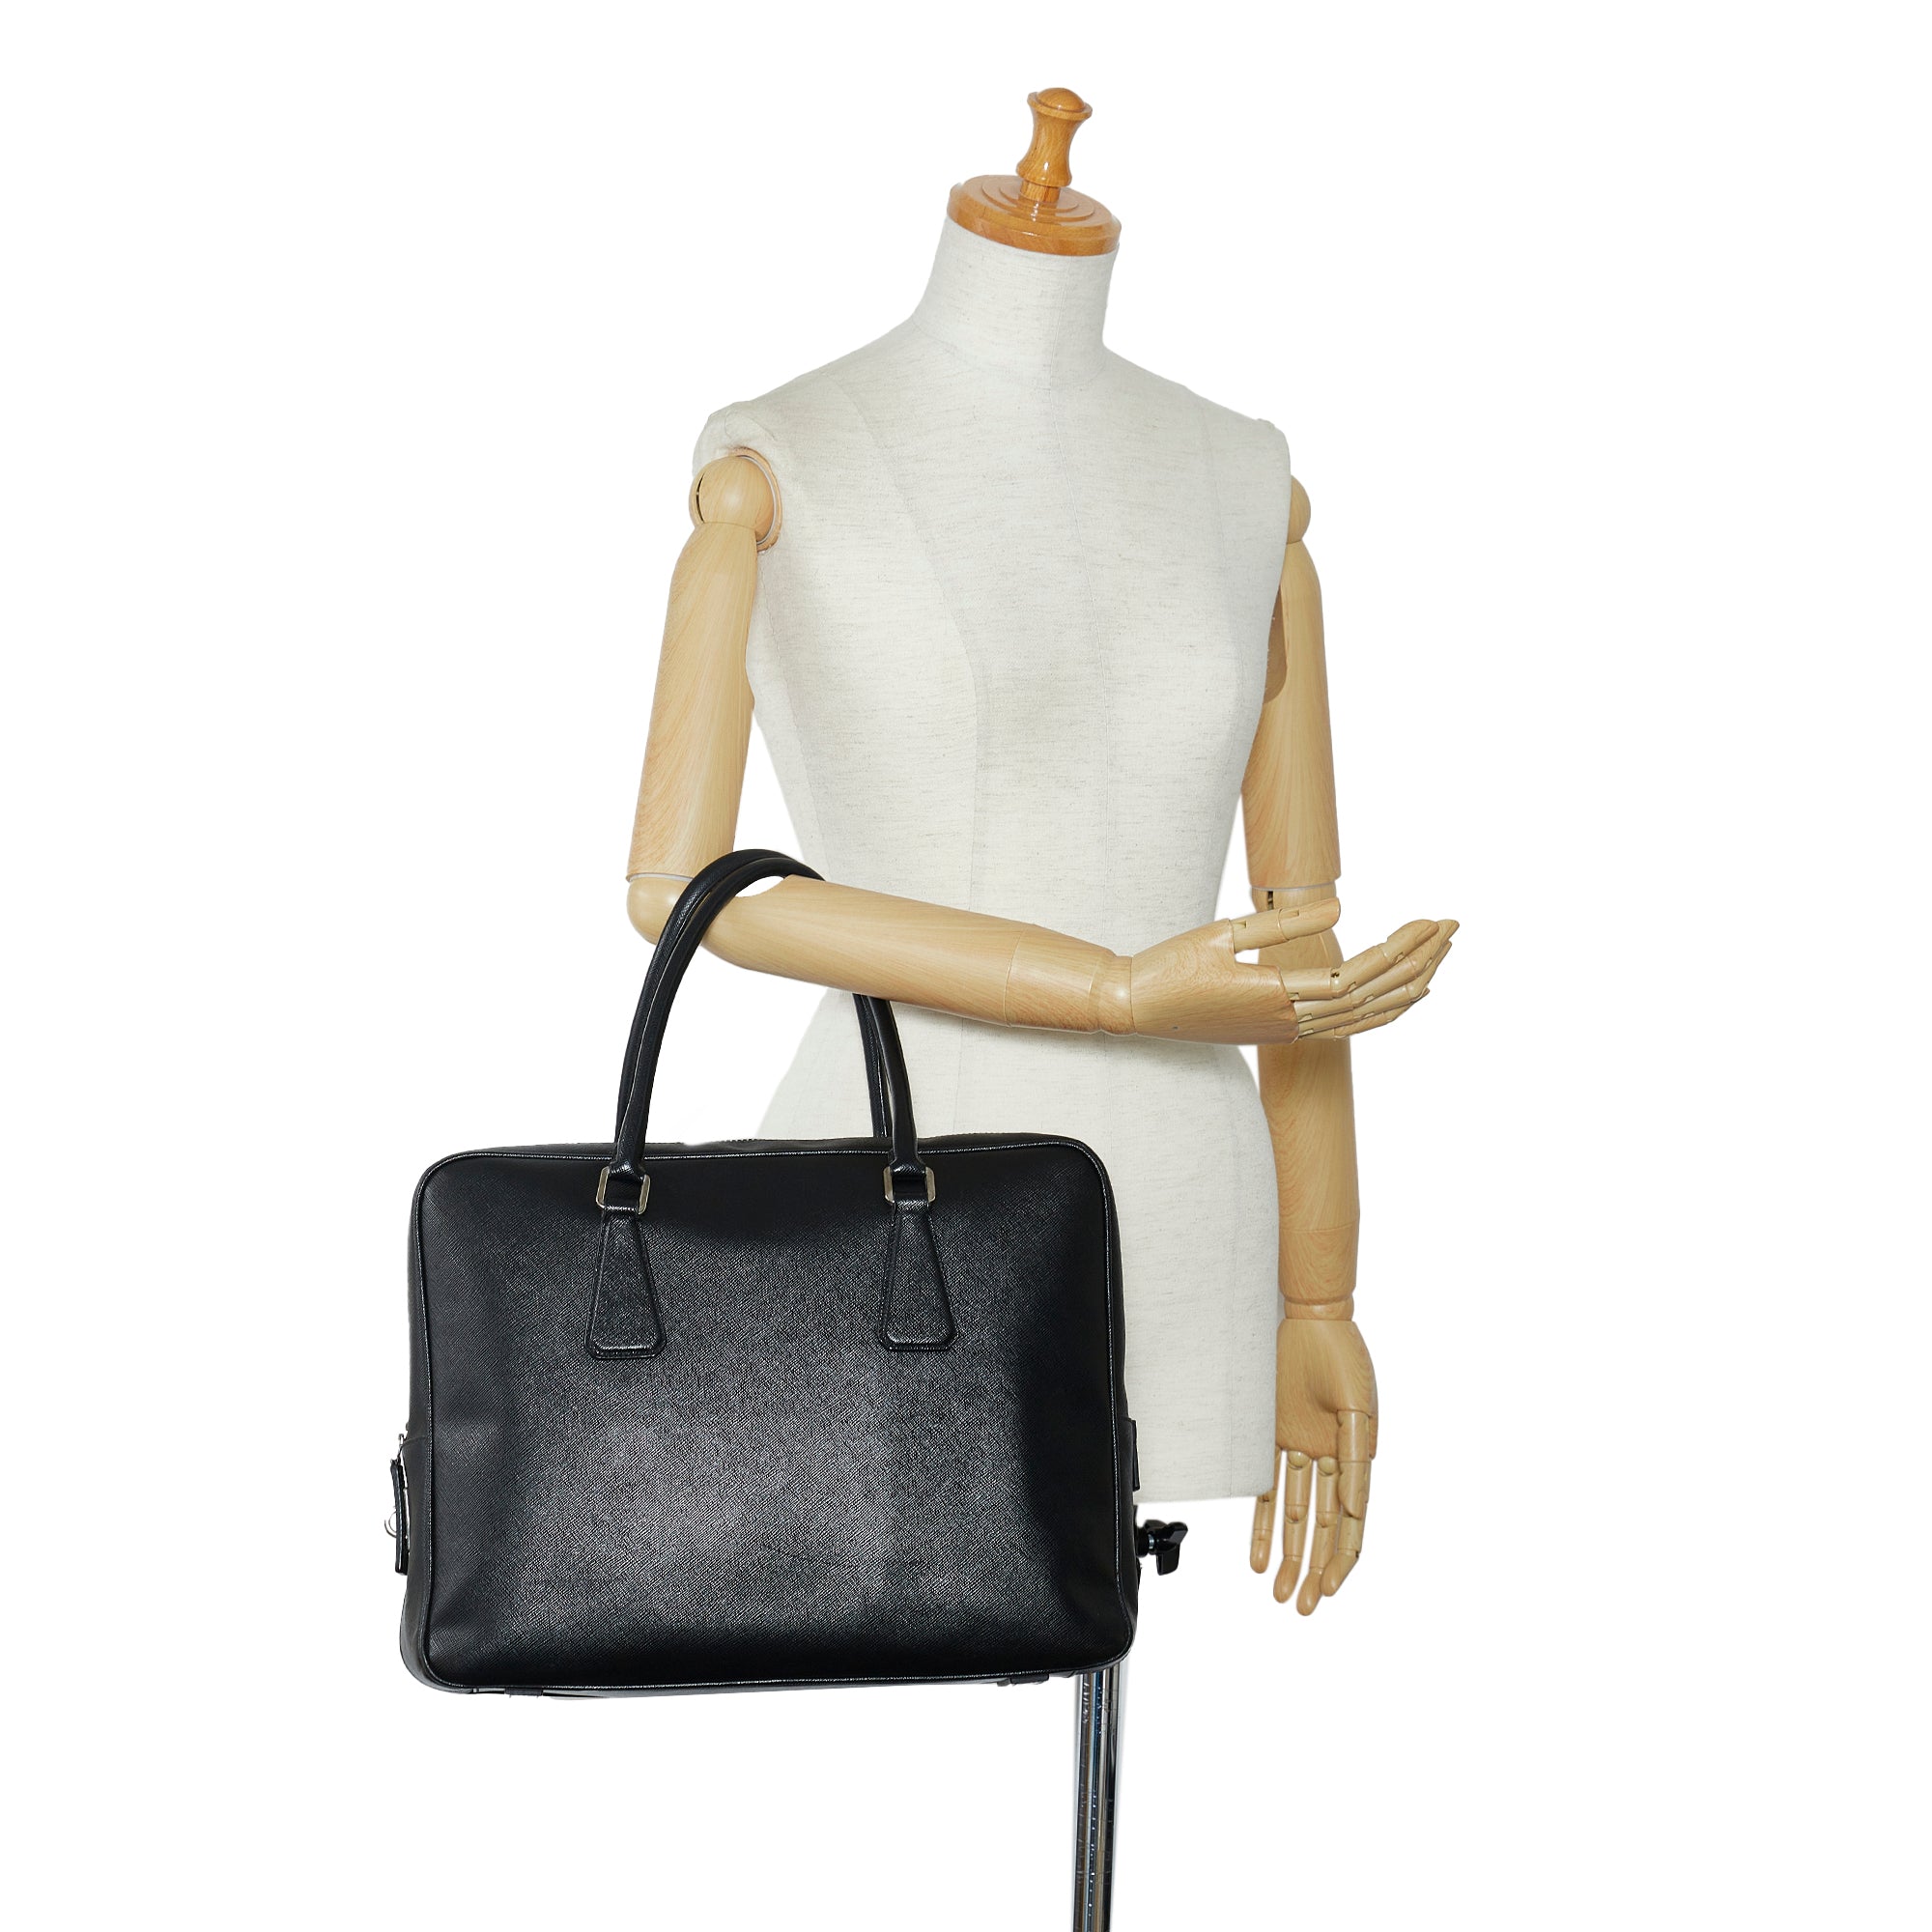 Shop Prada Saffiano Leather Travel Bag